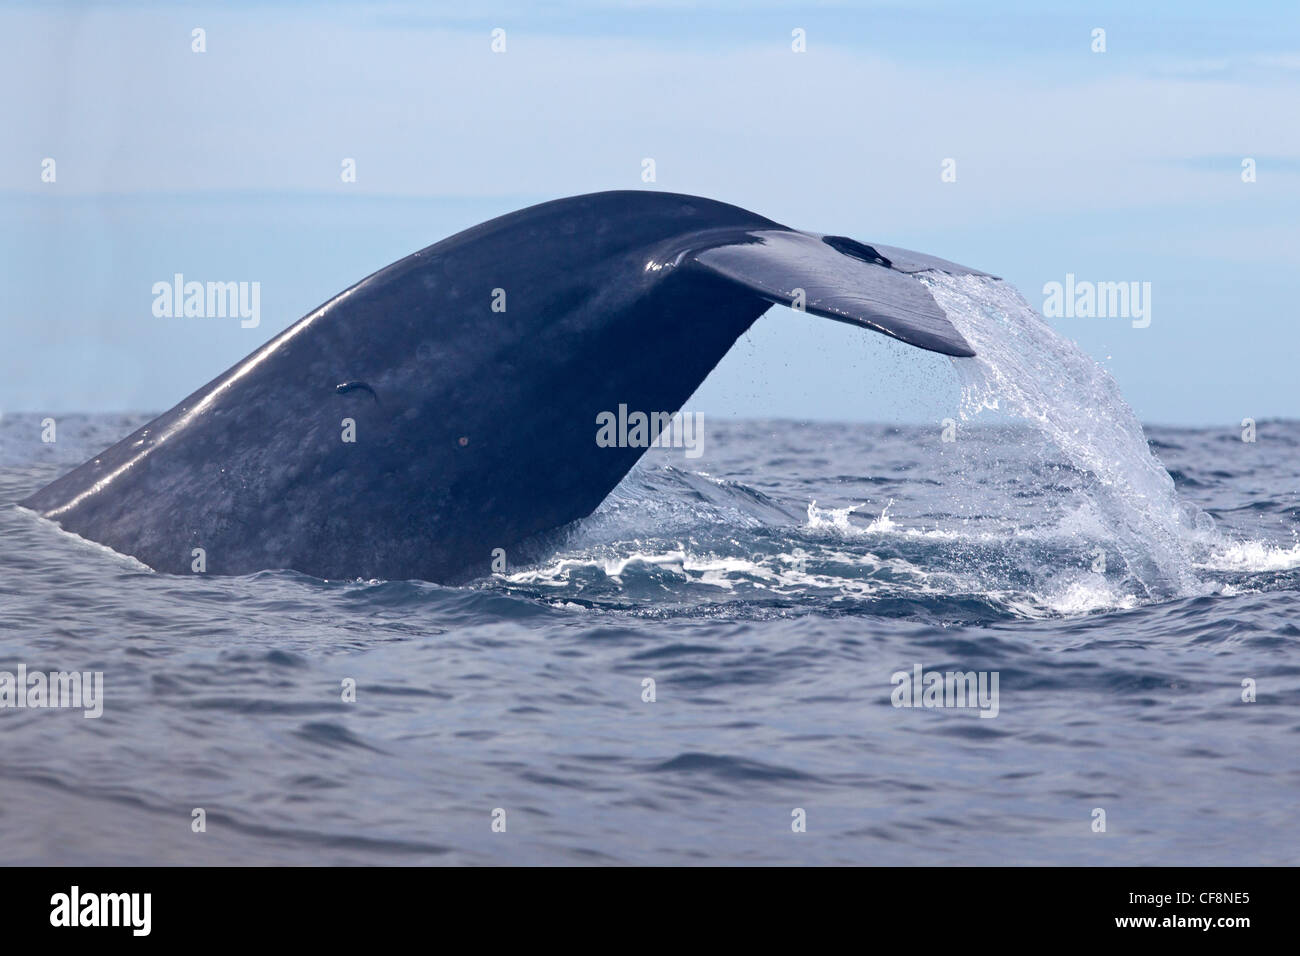 La baleine bleue avec queue soulevée hors de l'eau Banque D'Images